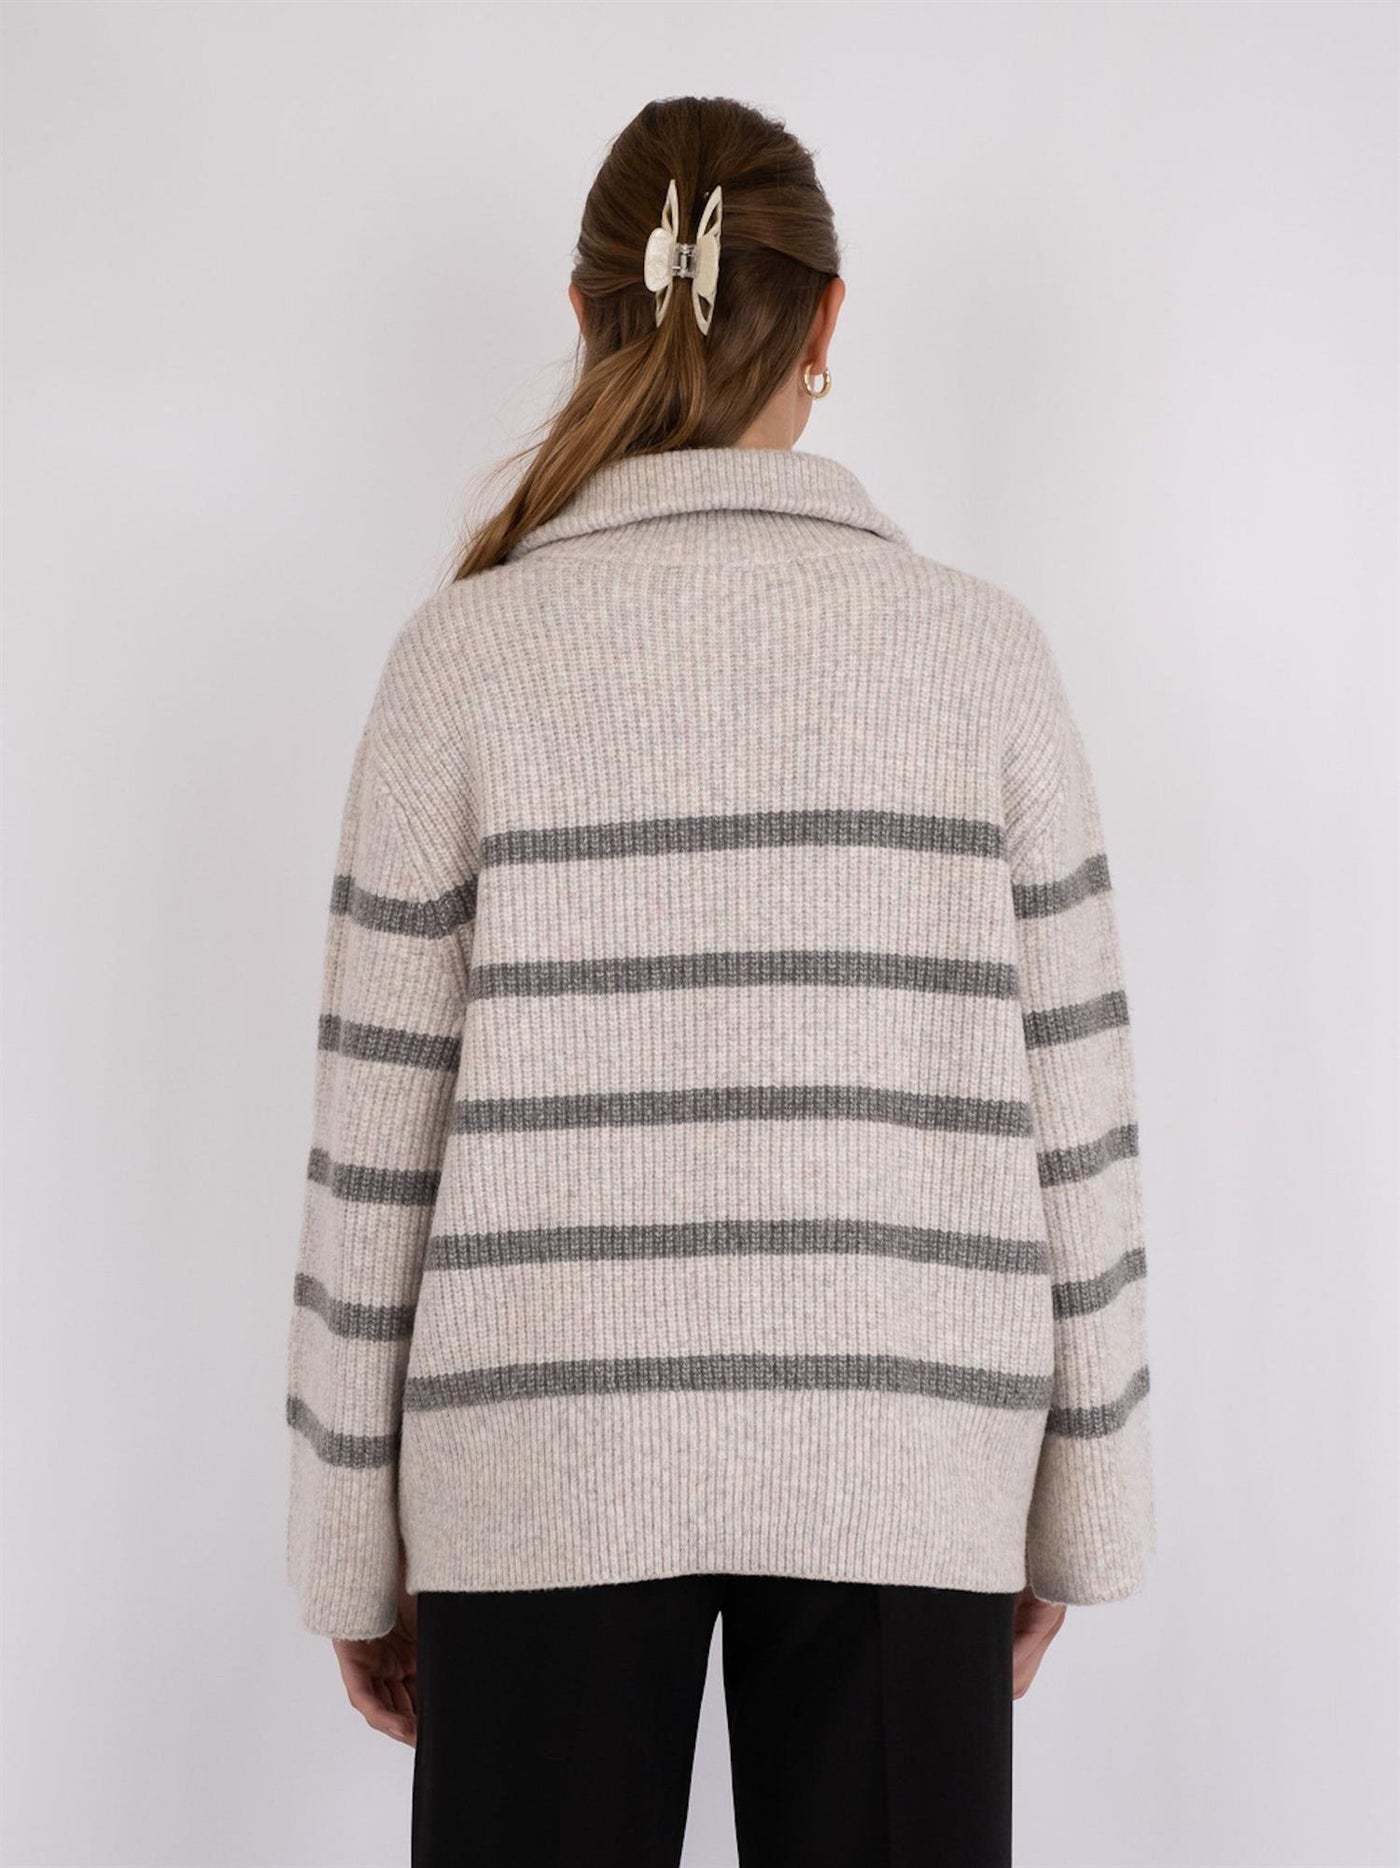 Nevena Stripe Knit Blouse Sand/Grey